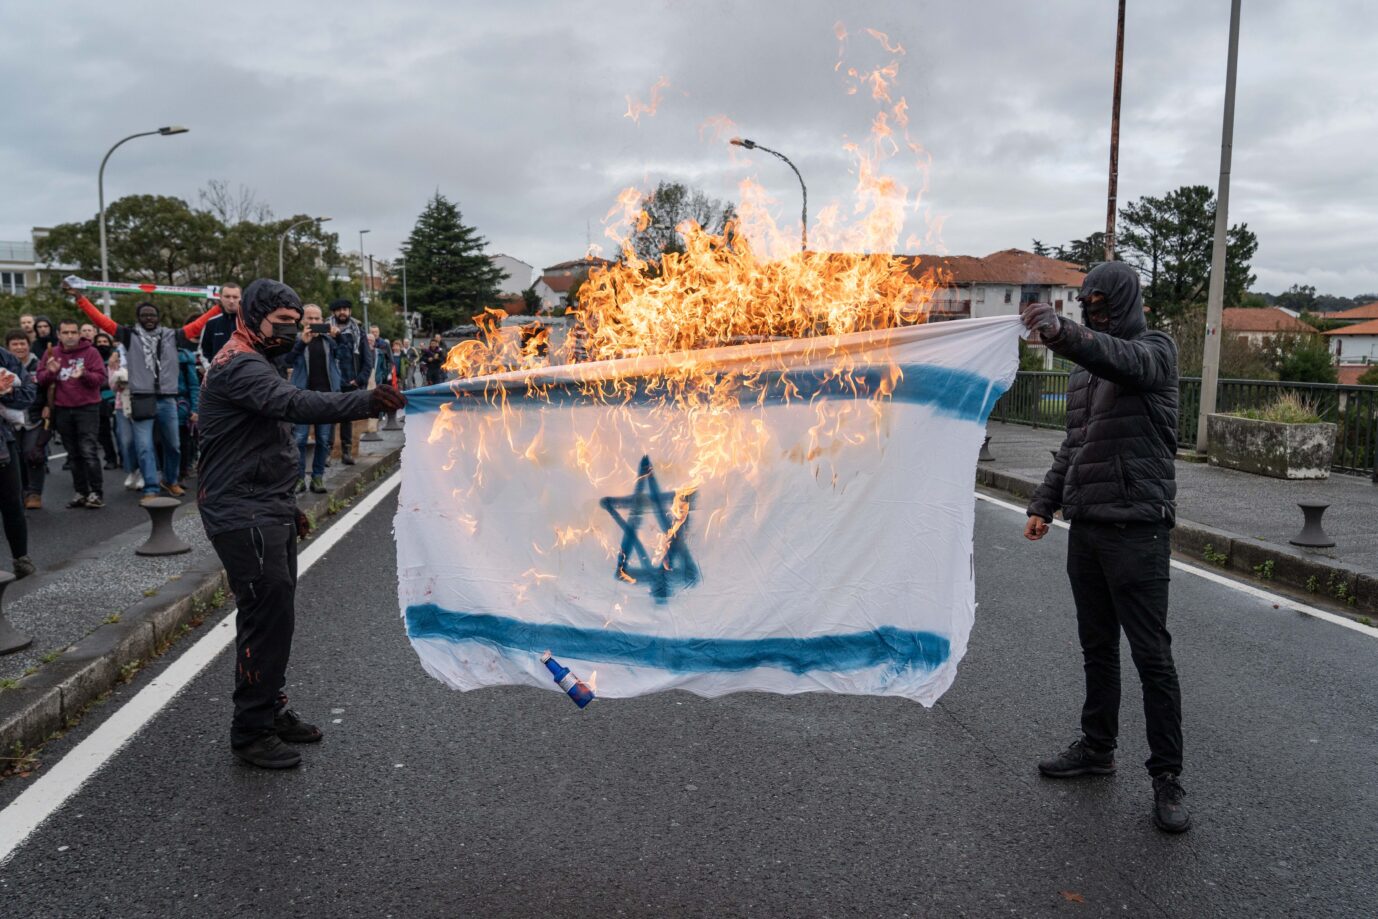 Vermummte verbrennen israelische Flagge bei Demonstration (am 11. November in Frankreich) nach dem Terror der Hamas in Israel und dem Krieg in Palästina / Gaza erlebt Frankreich erneut Antisemitismus, Quelle: picture alliance/dpa, Javi Julio, zumapress.com